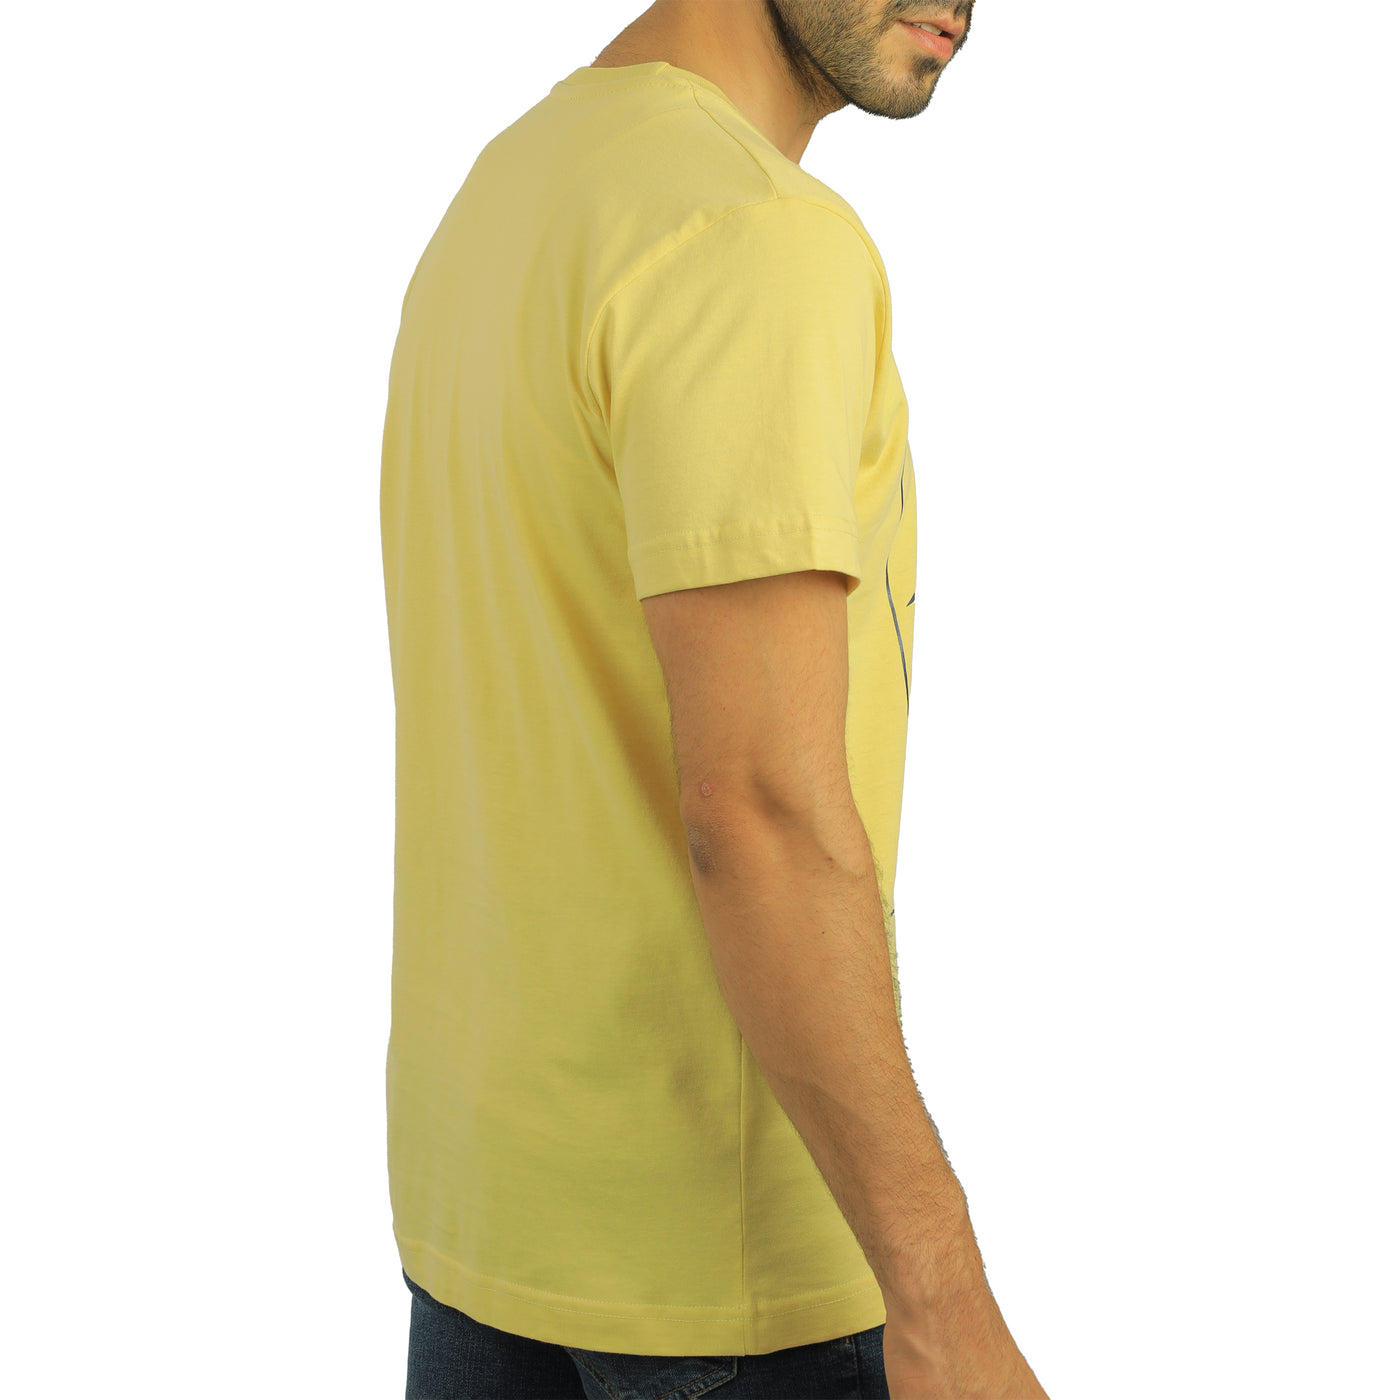 Yellow round T-shirt